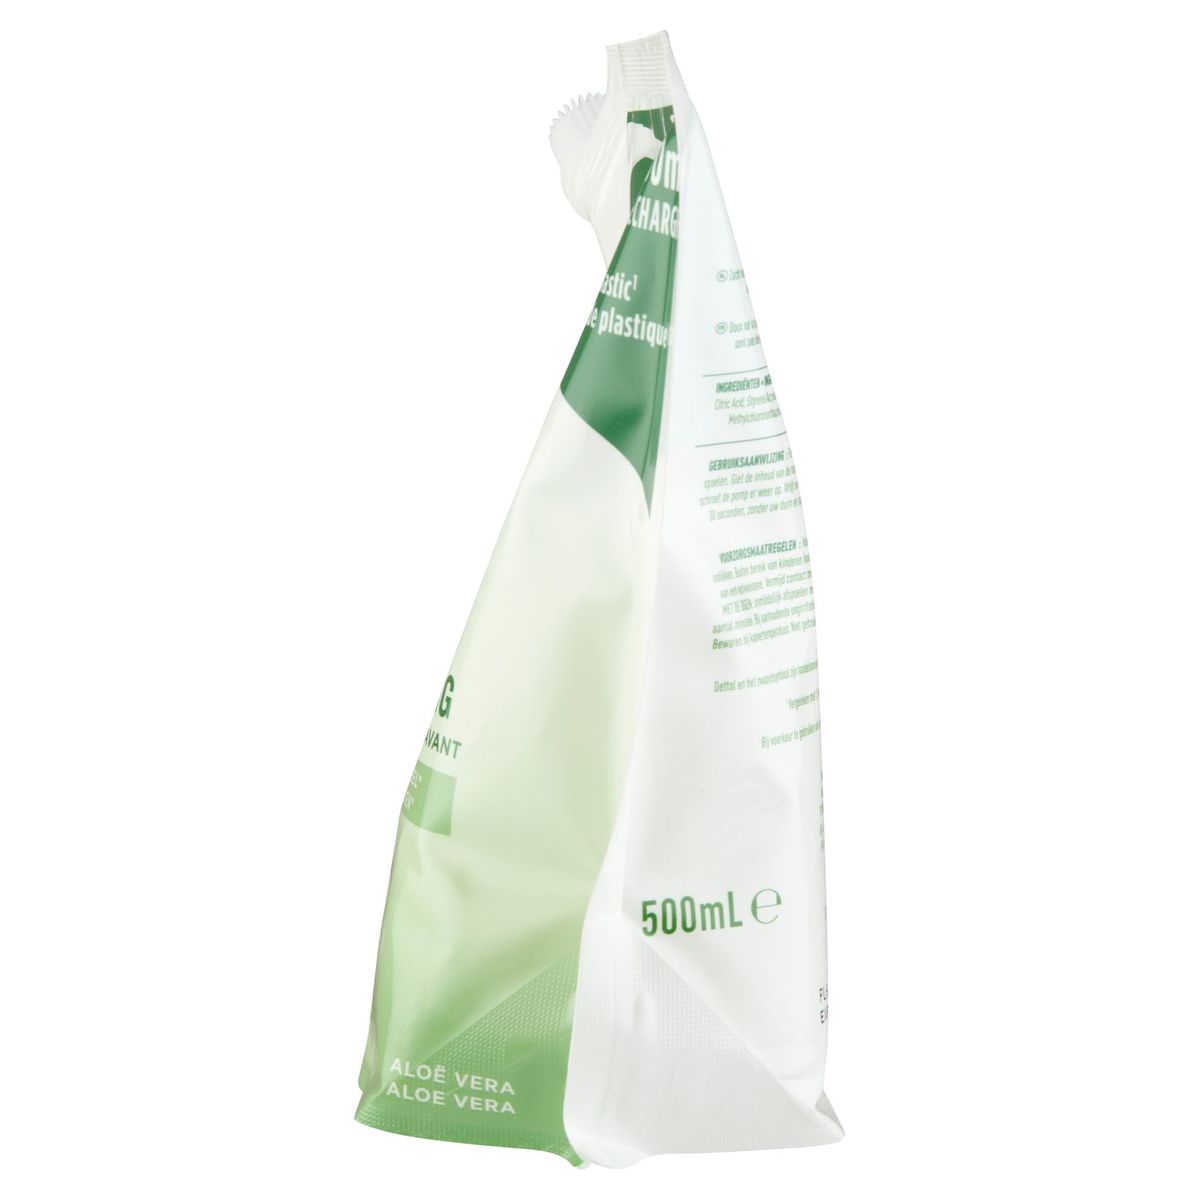 DETTOL Navulling Wasgel Hydraterend - Aloe Vera 500 ml